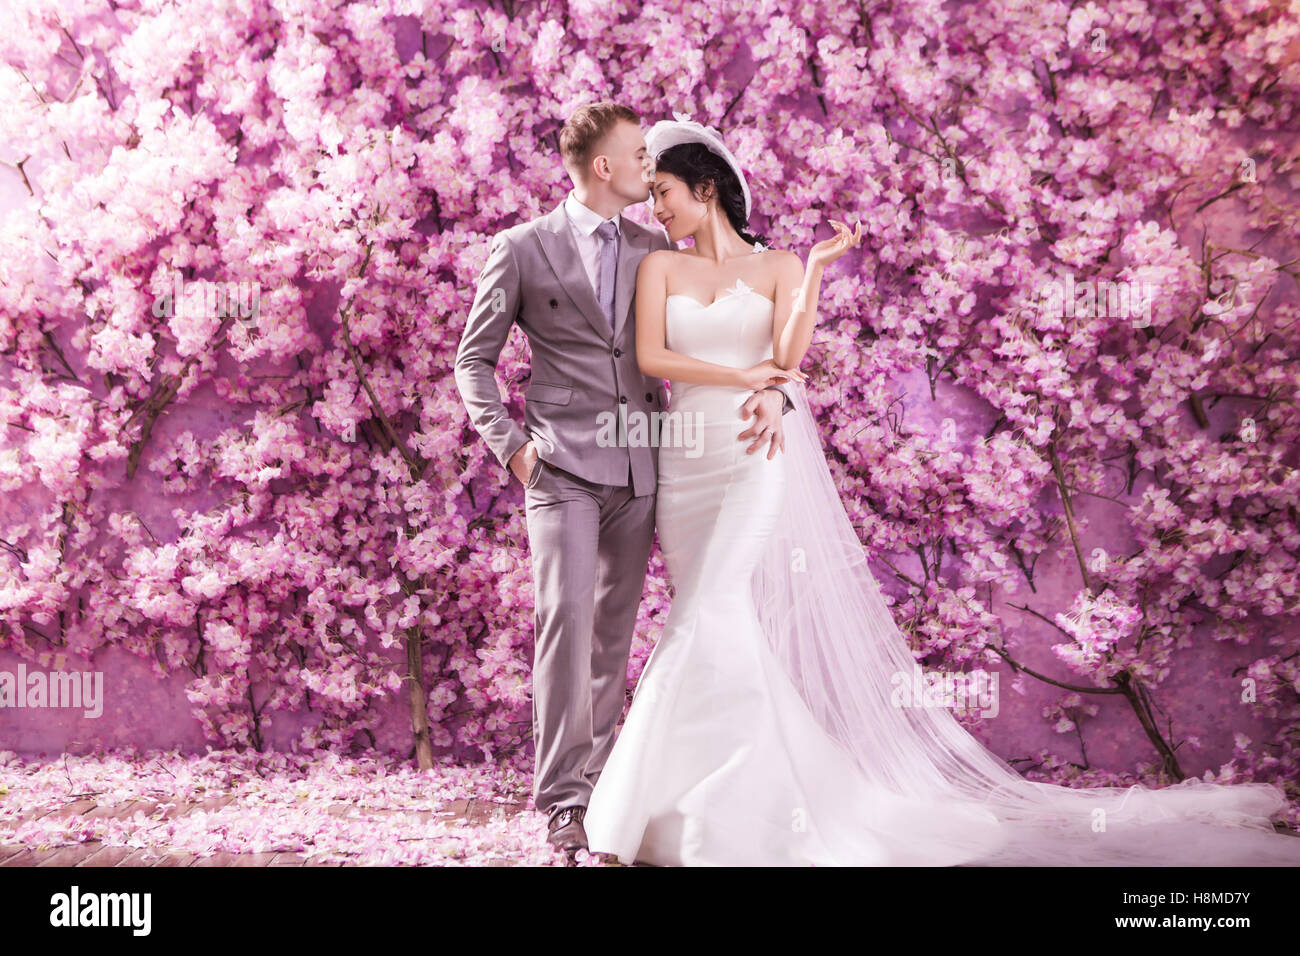 Romantico sposo baciare sposa sulla fronte mentre in piedi contro la parete ricoperta con fiori di colore rosa Foto Stock